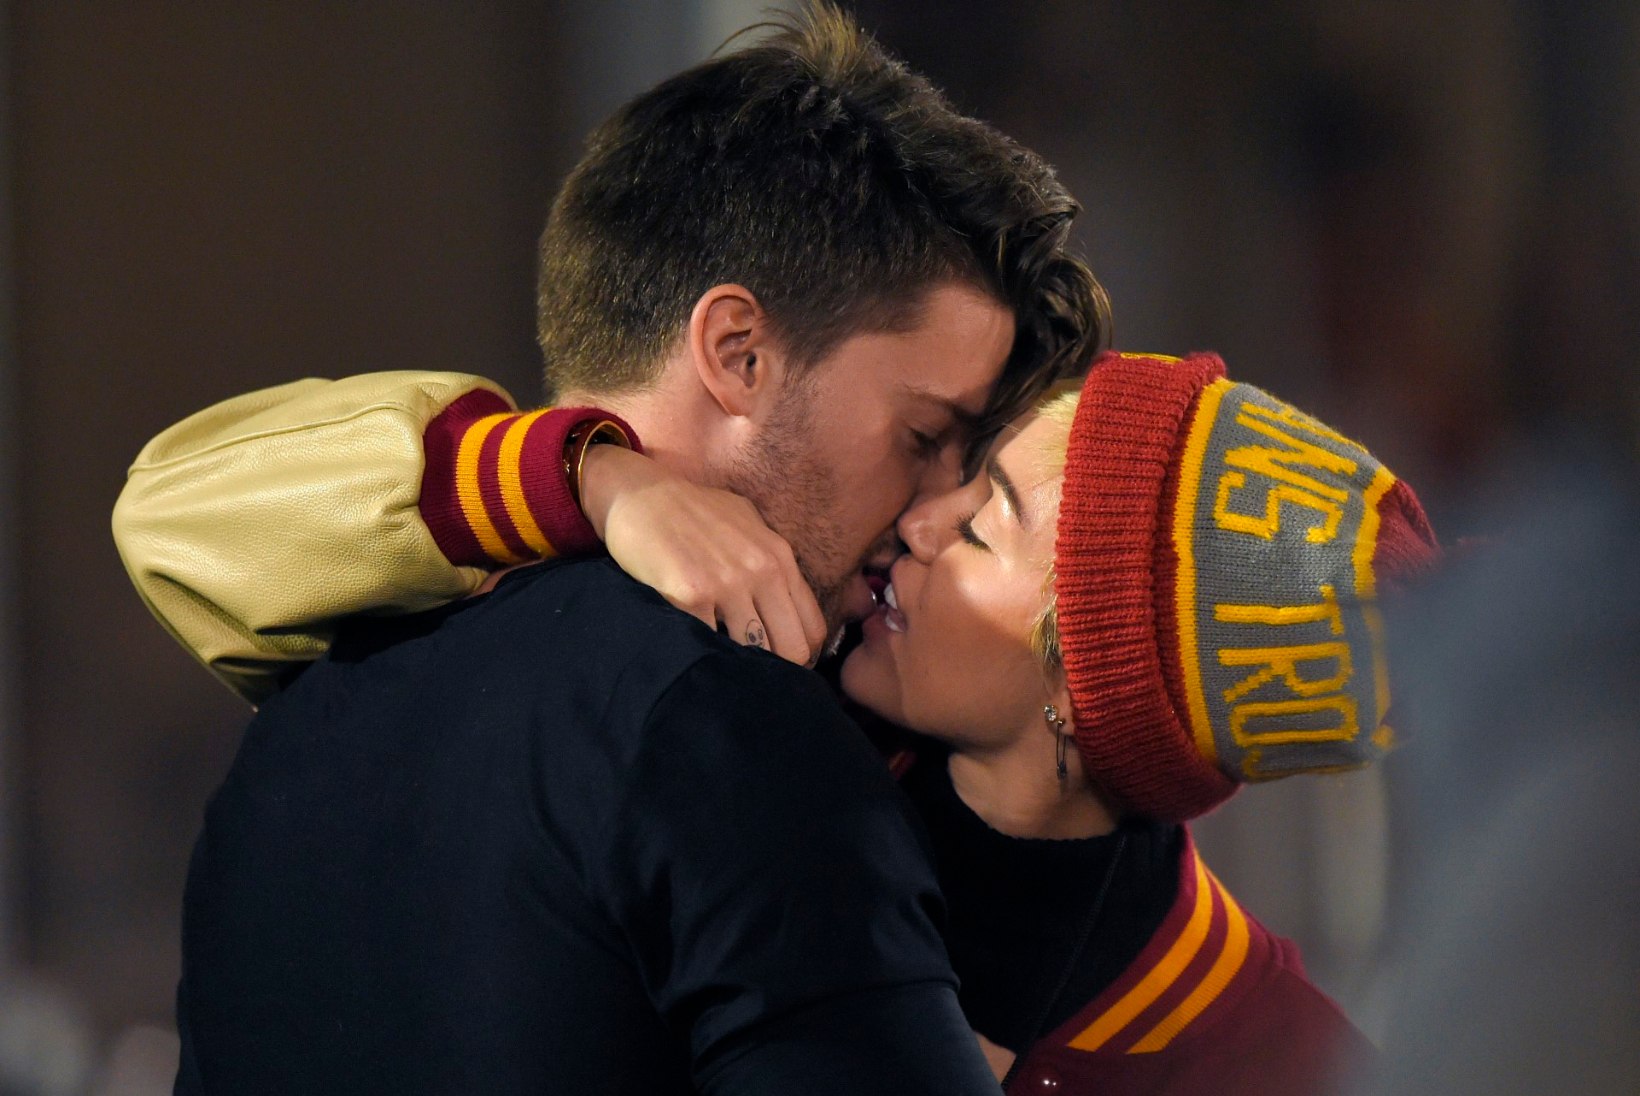 FOTOD: Miley kallistas ja musitas taas avalikult oma poiss-sõpra!